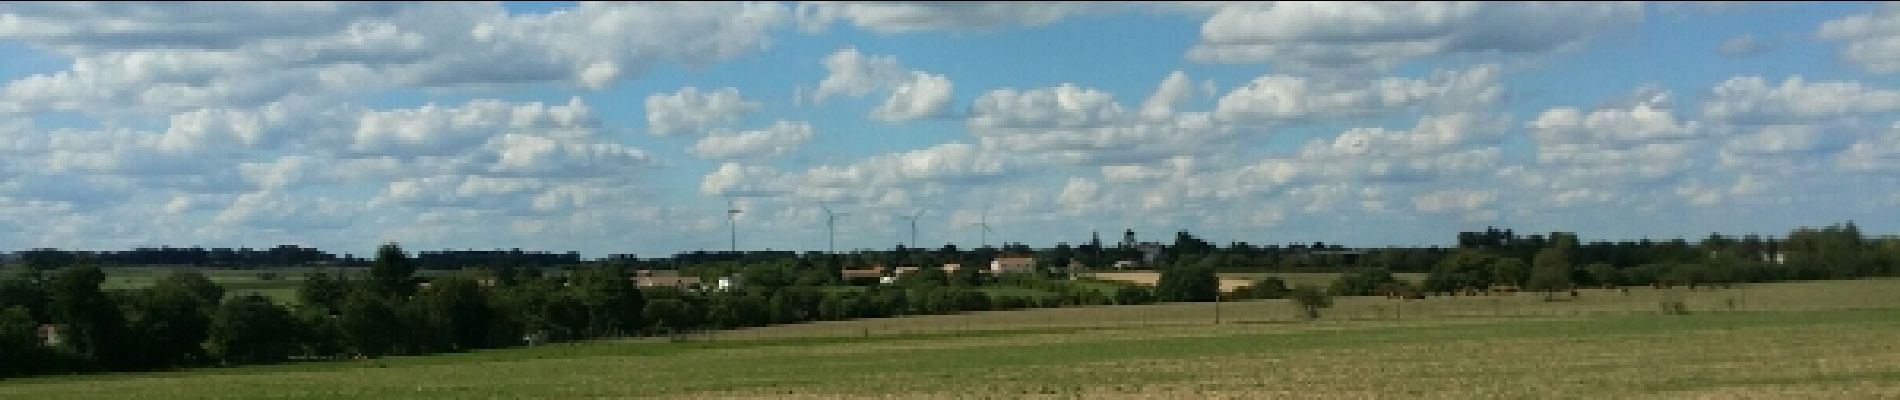 POI Aussac-Vadalle - Les éoliennes  - Photo